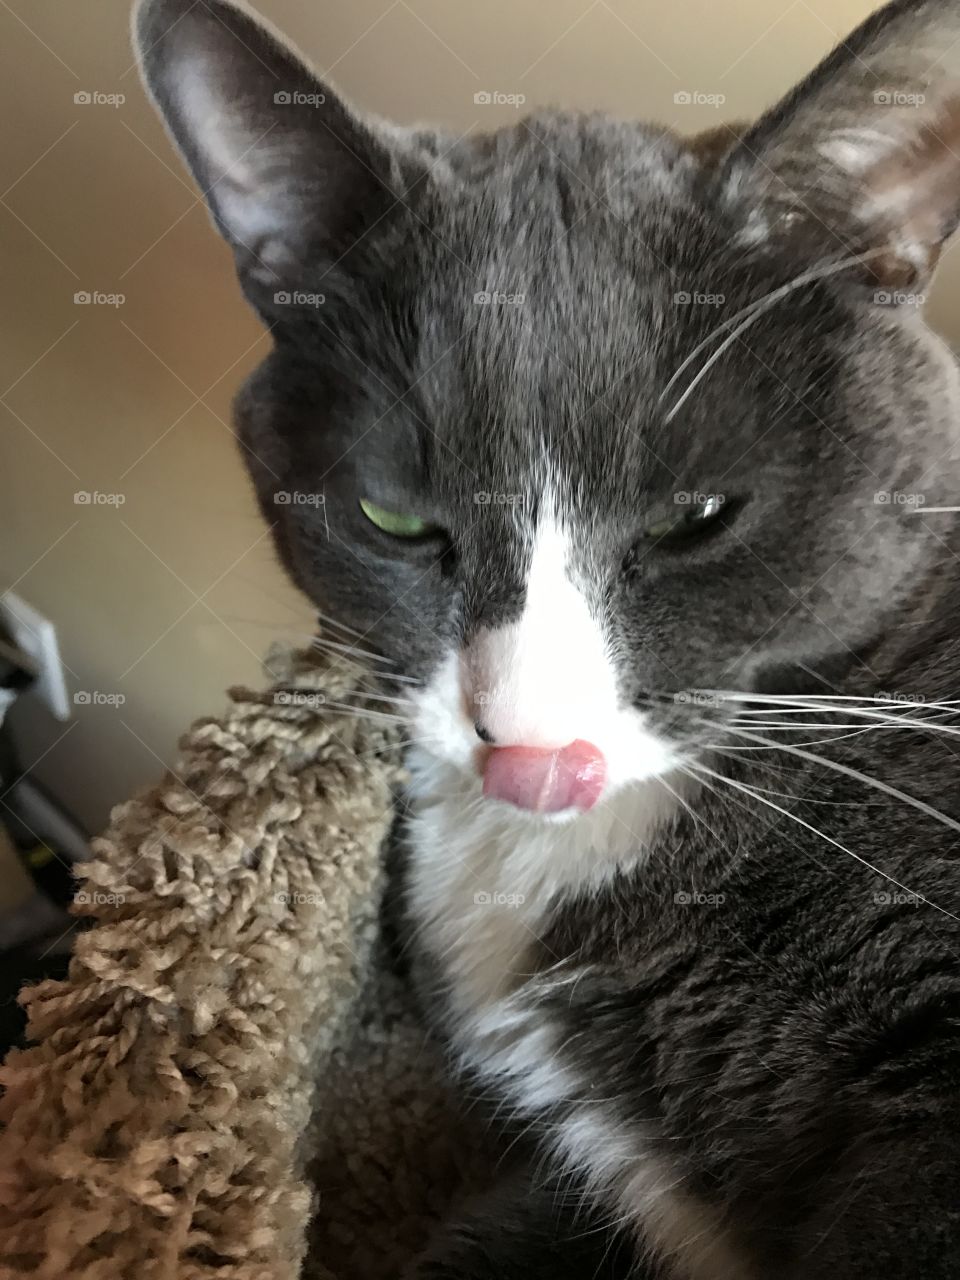 Cat got its tongue?